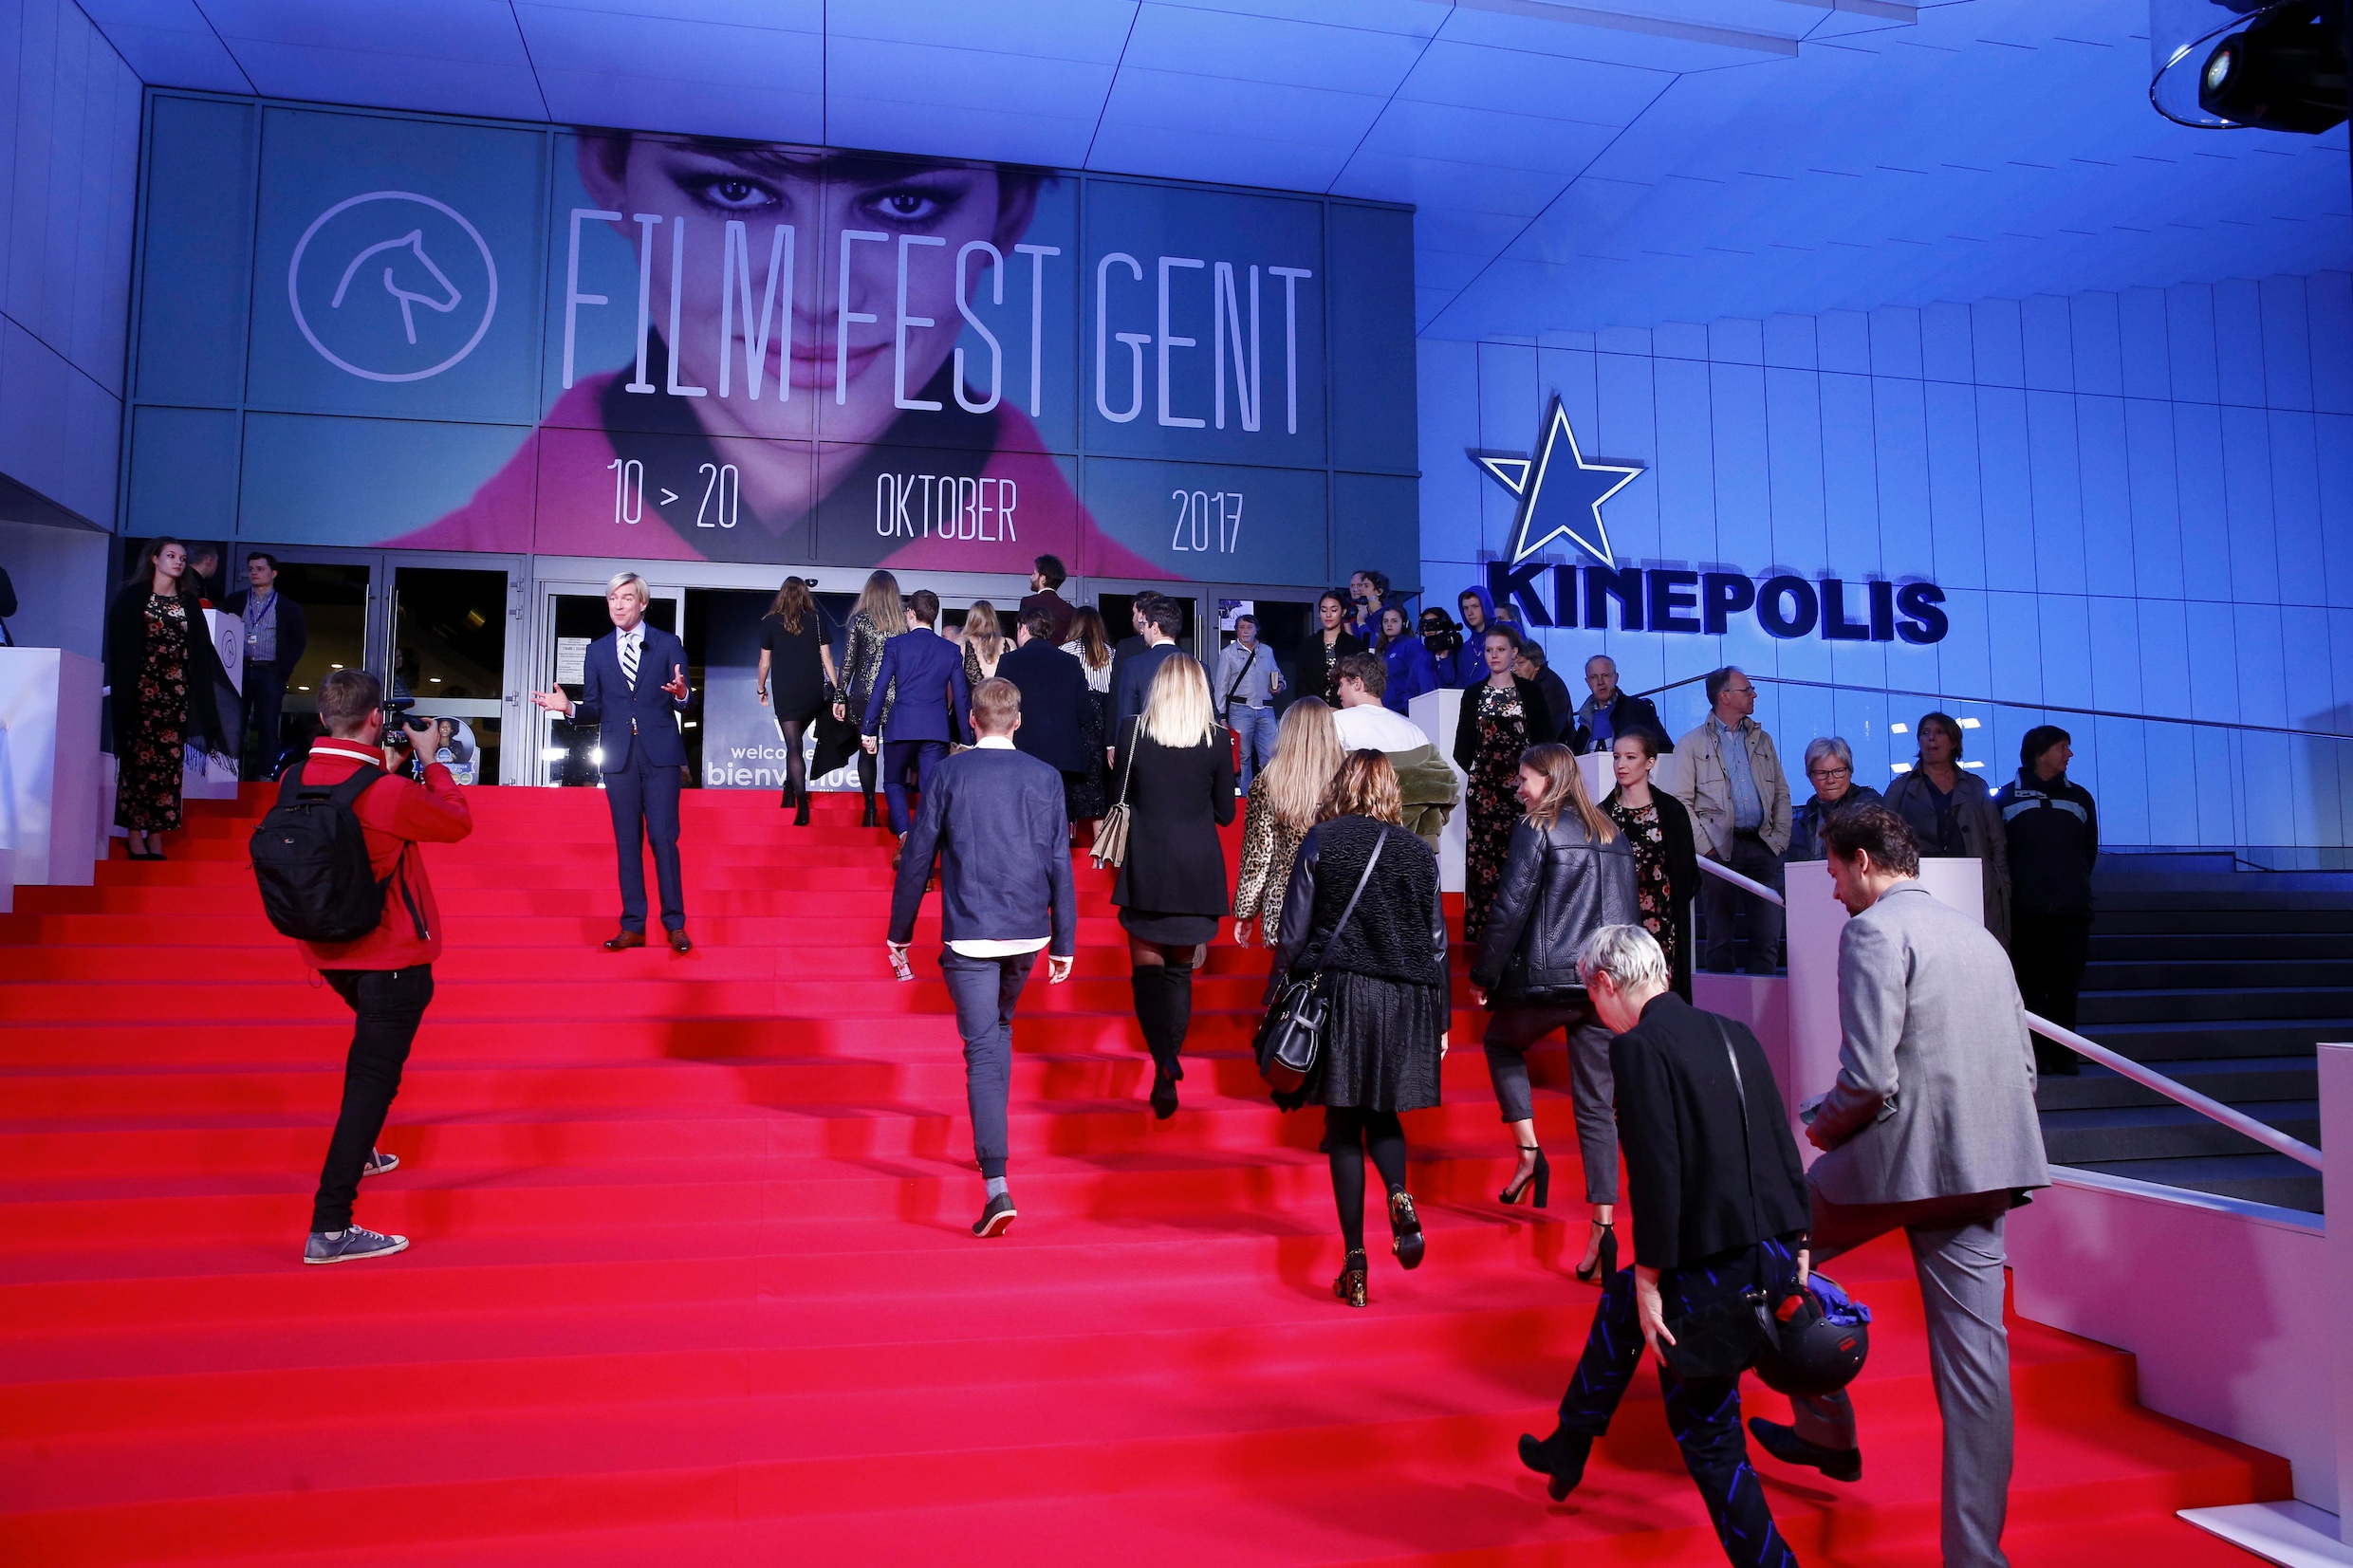 Film Fest Gent lanceert eigen on-demanddienst